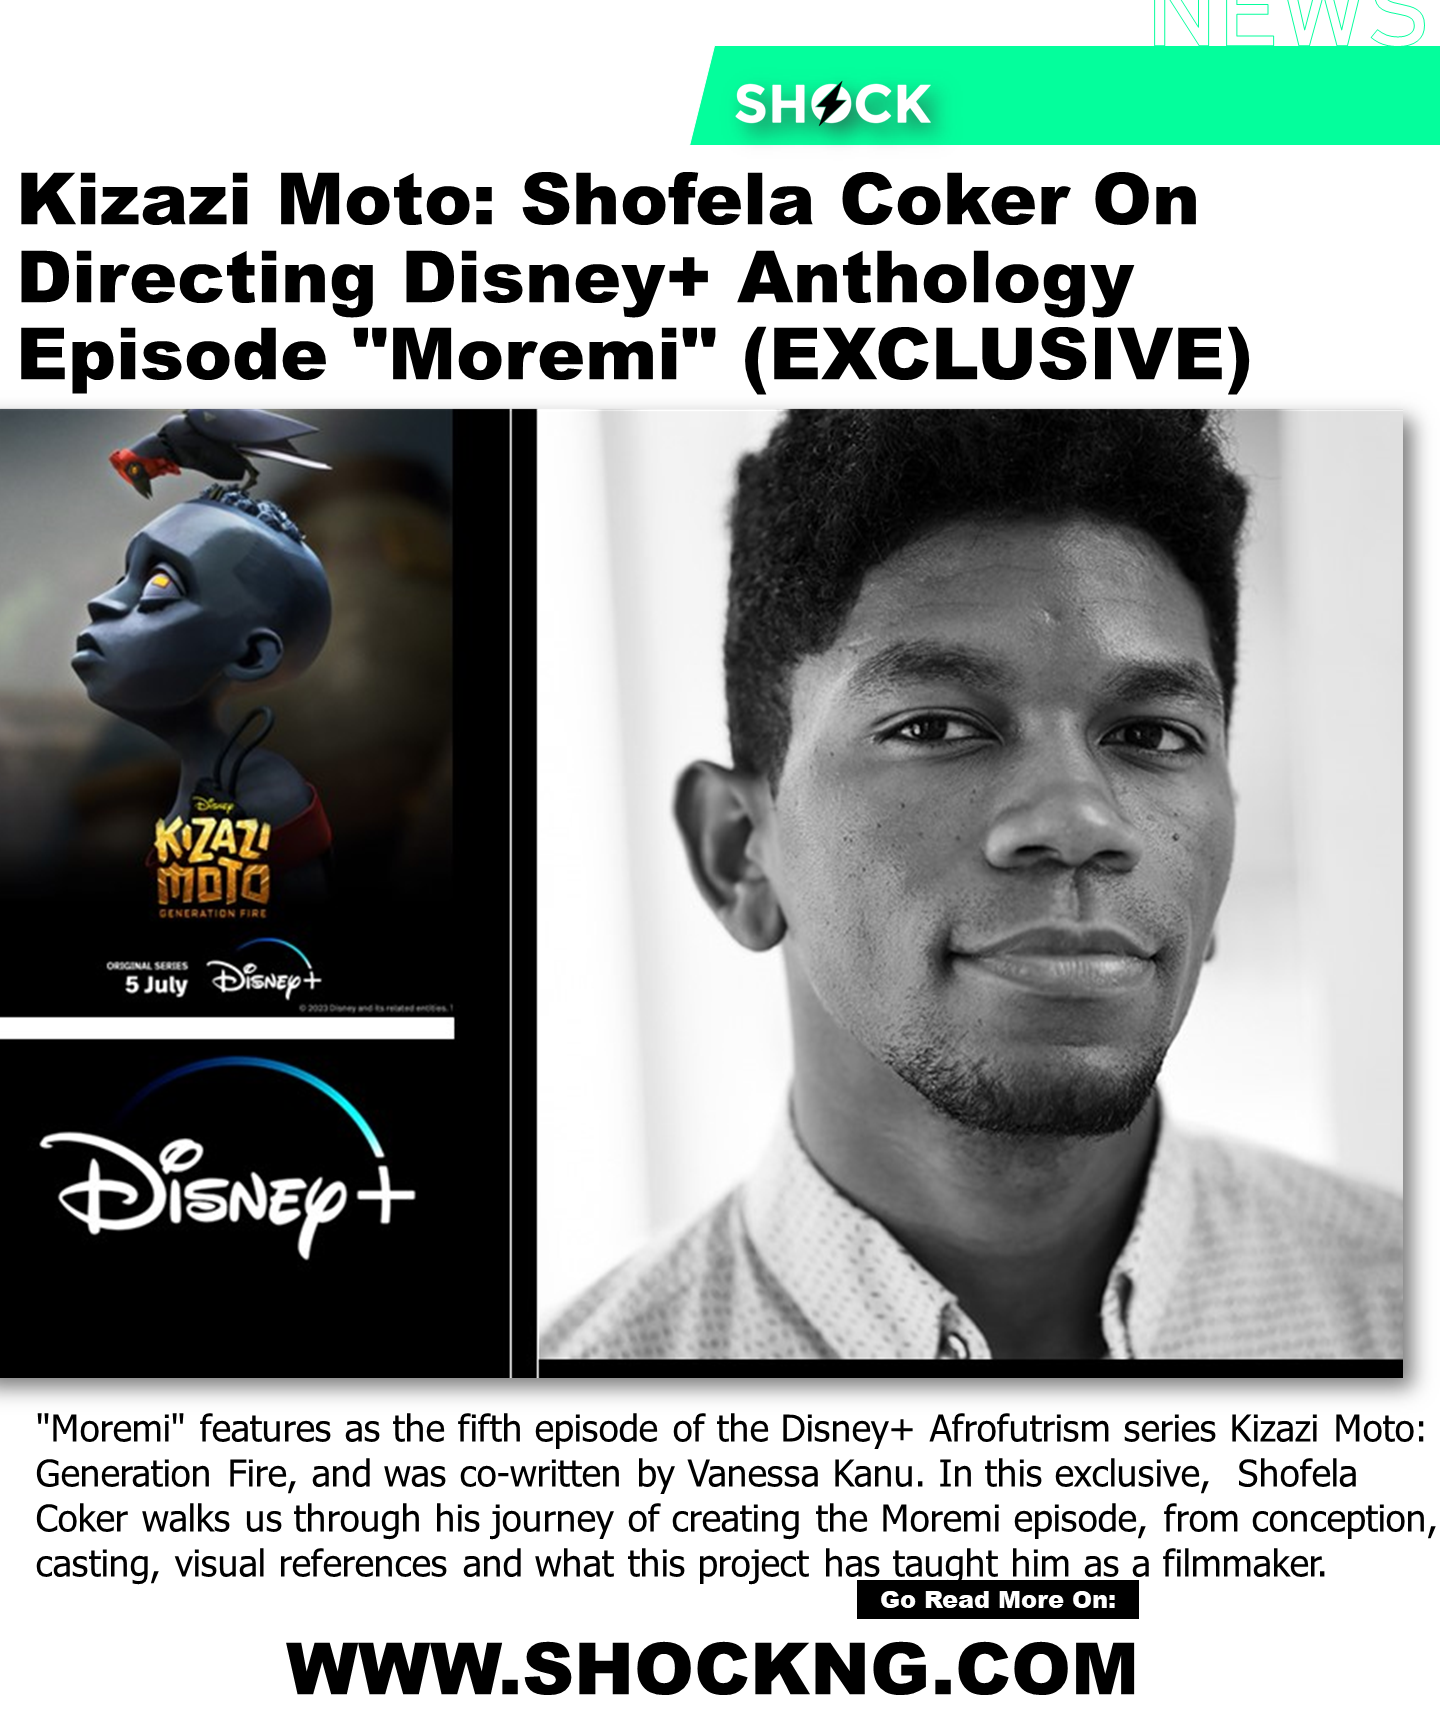 Shofel coker Animation - Kizazi Moto: Shofela Coker On Directing Disney+ Anthology Episode "Moremi" (EXCLUSIVE)